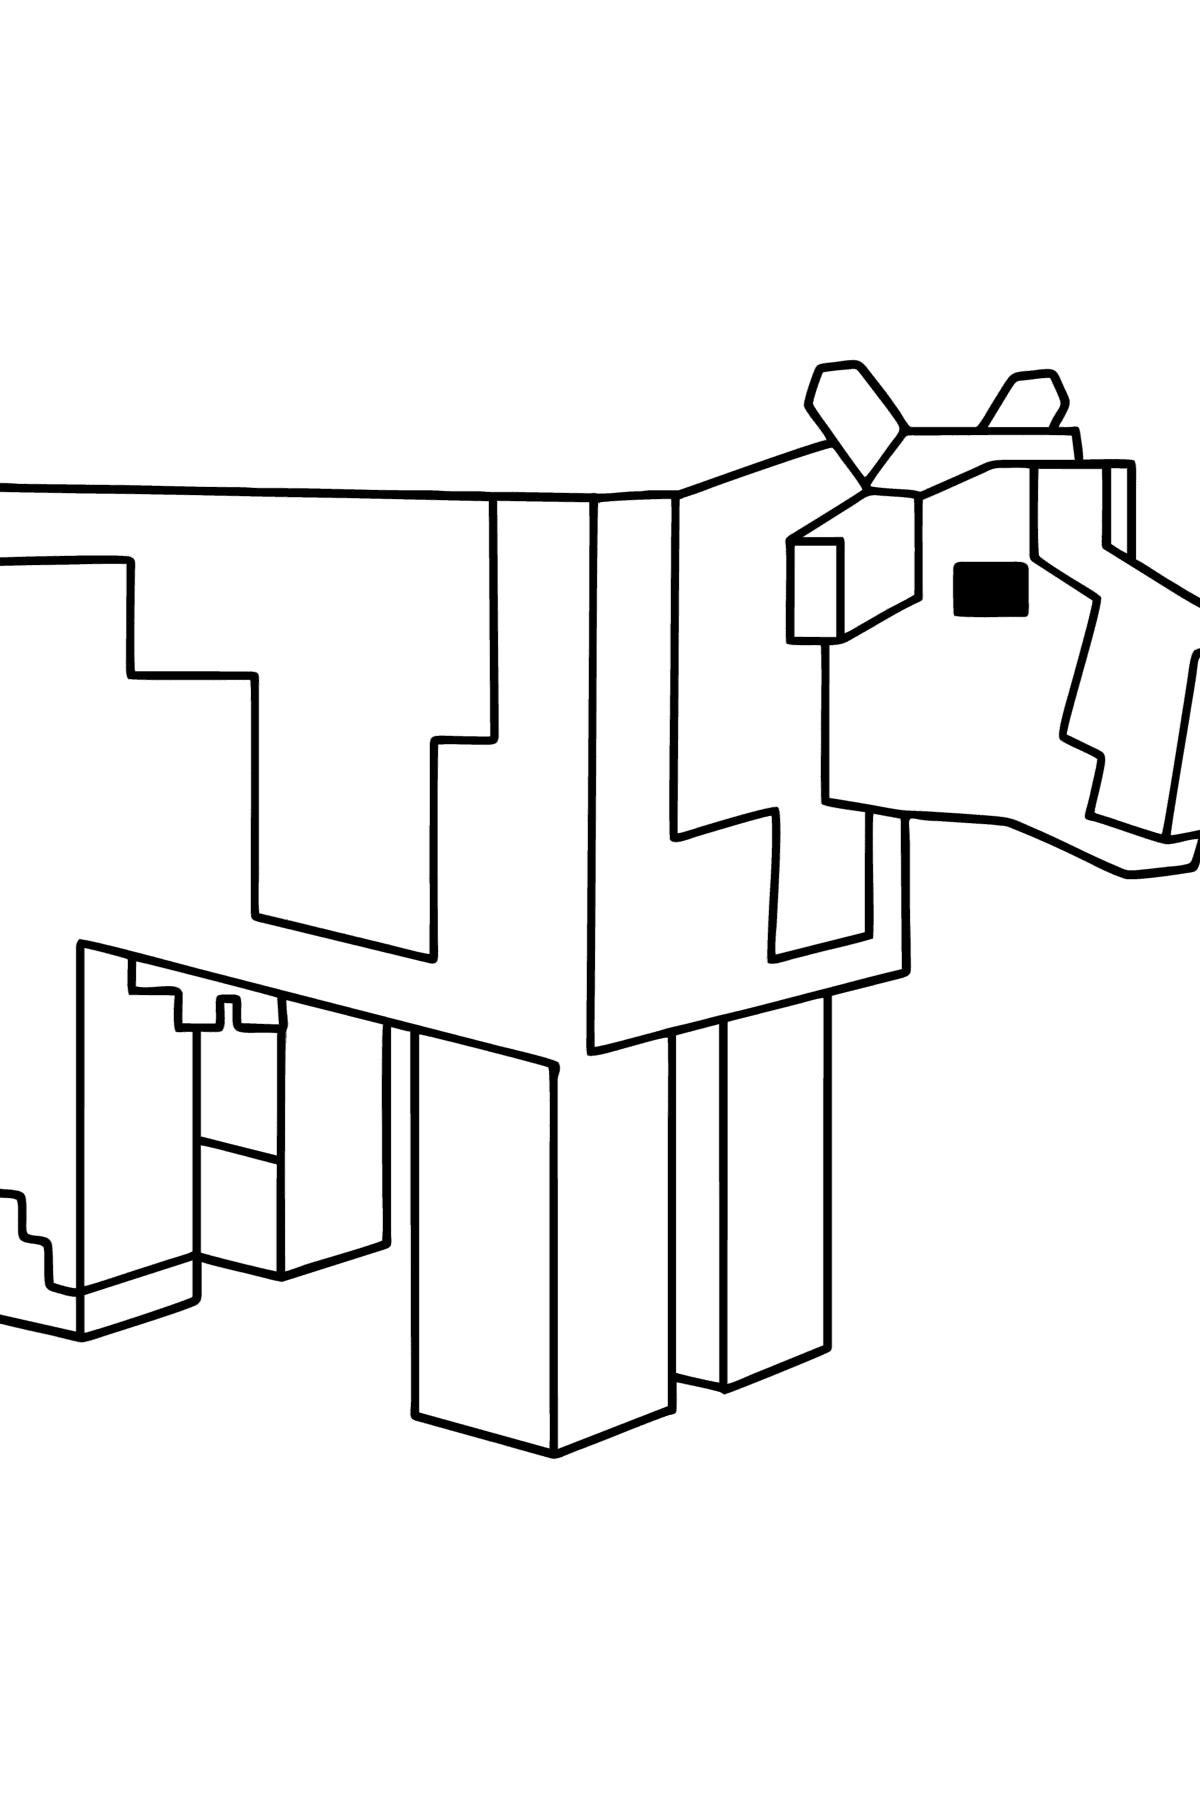 Tegning til fargelegging Minecraft Cow - Tegninger til fargelegging for barn